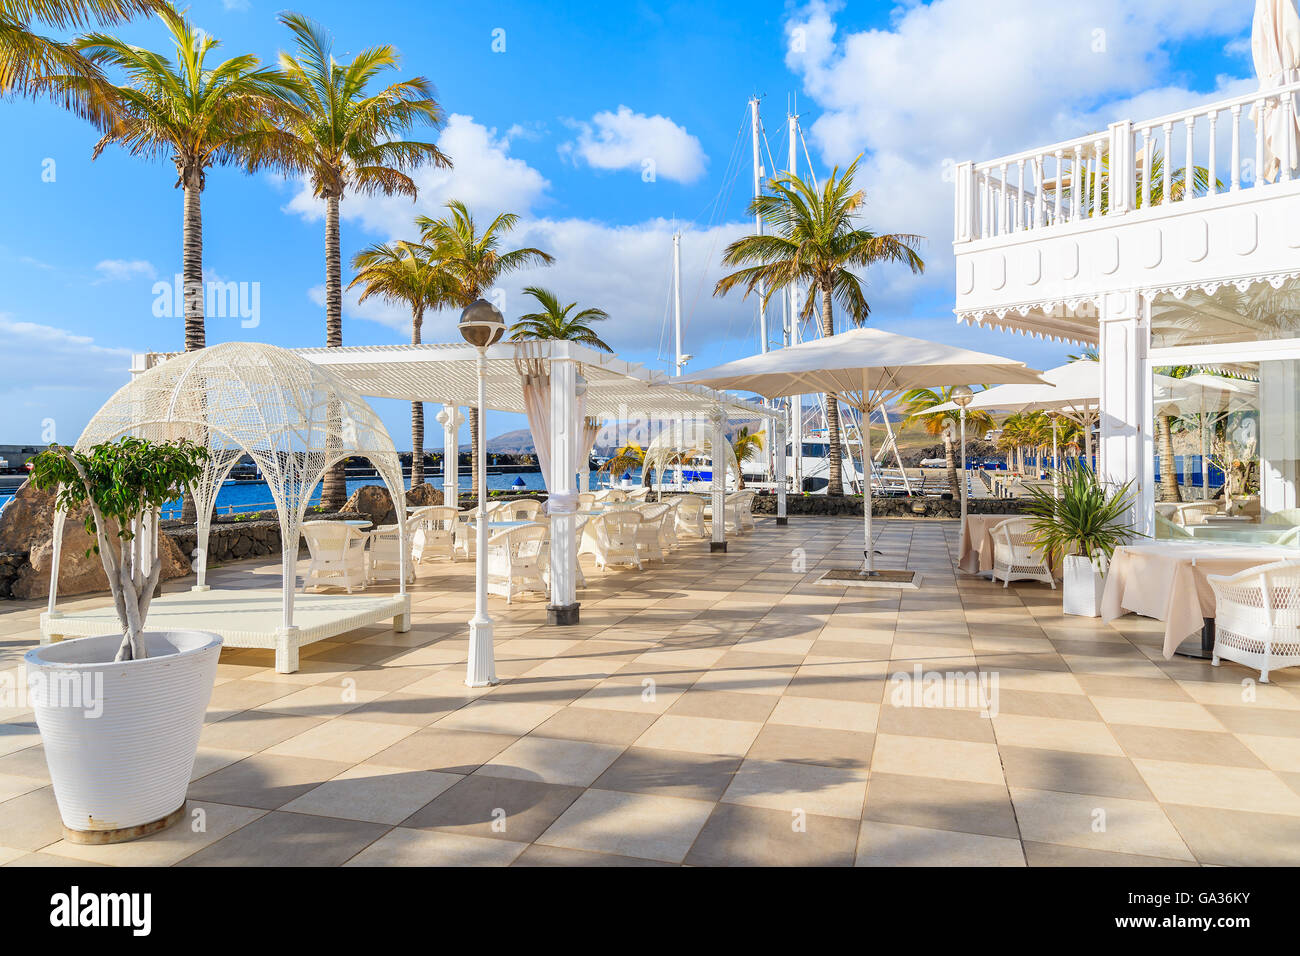 PUERTO CALERO MARINA, Lanzarote - Jan 17, 2015: lussuoso ristorante terrazza in Puerto Calero marina costruito in stile caraibico. Le isole Canarie sono meta di vacanze tutto l'anno. Foto Stock